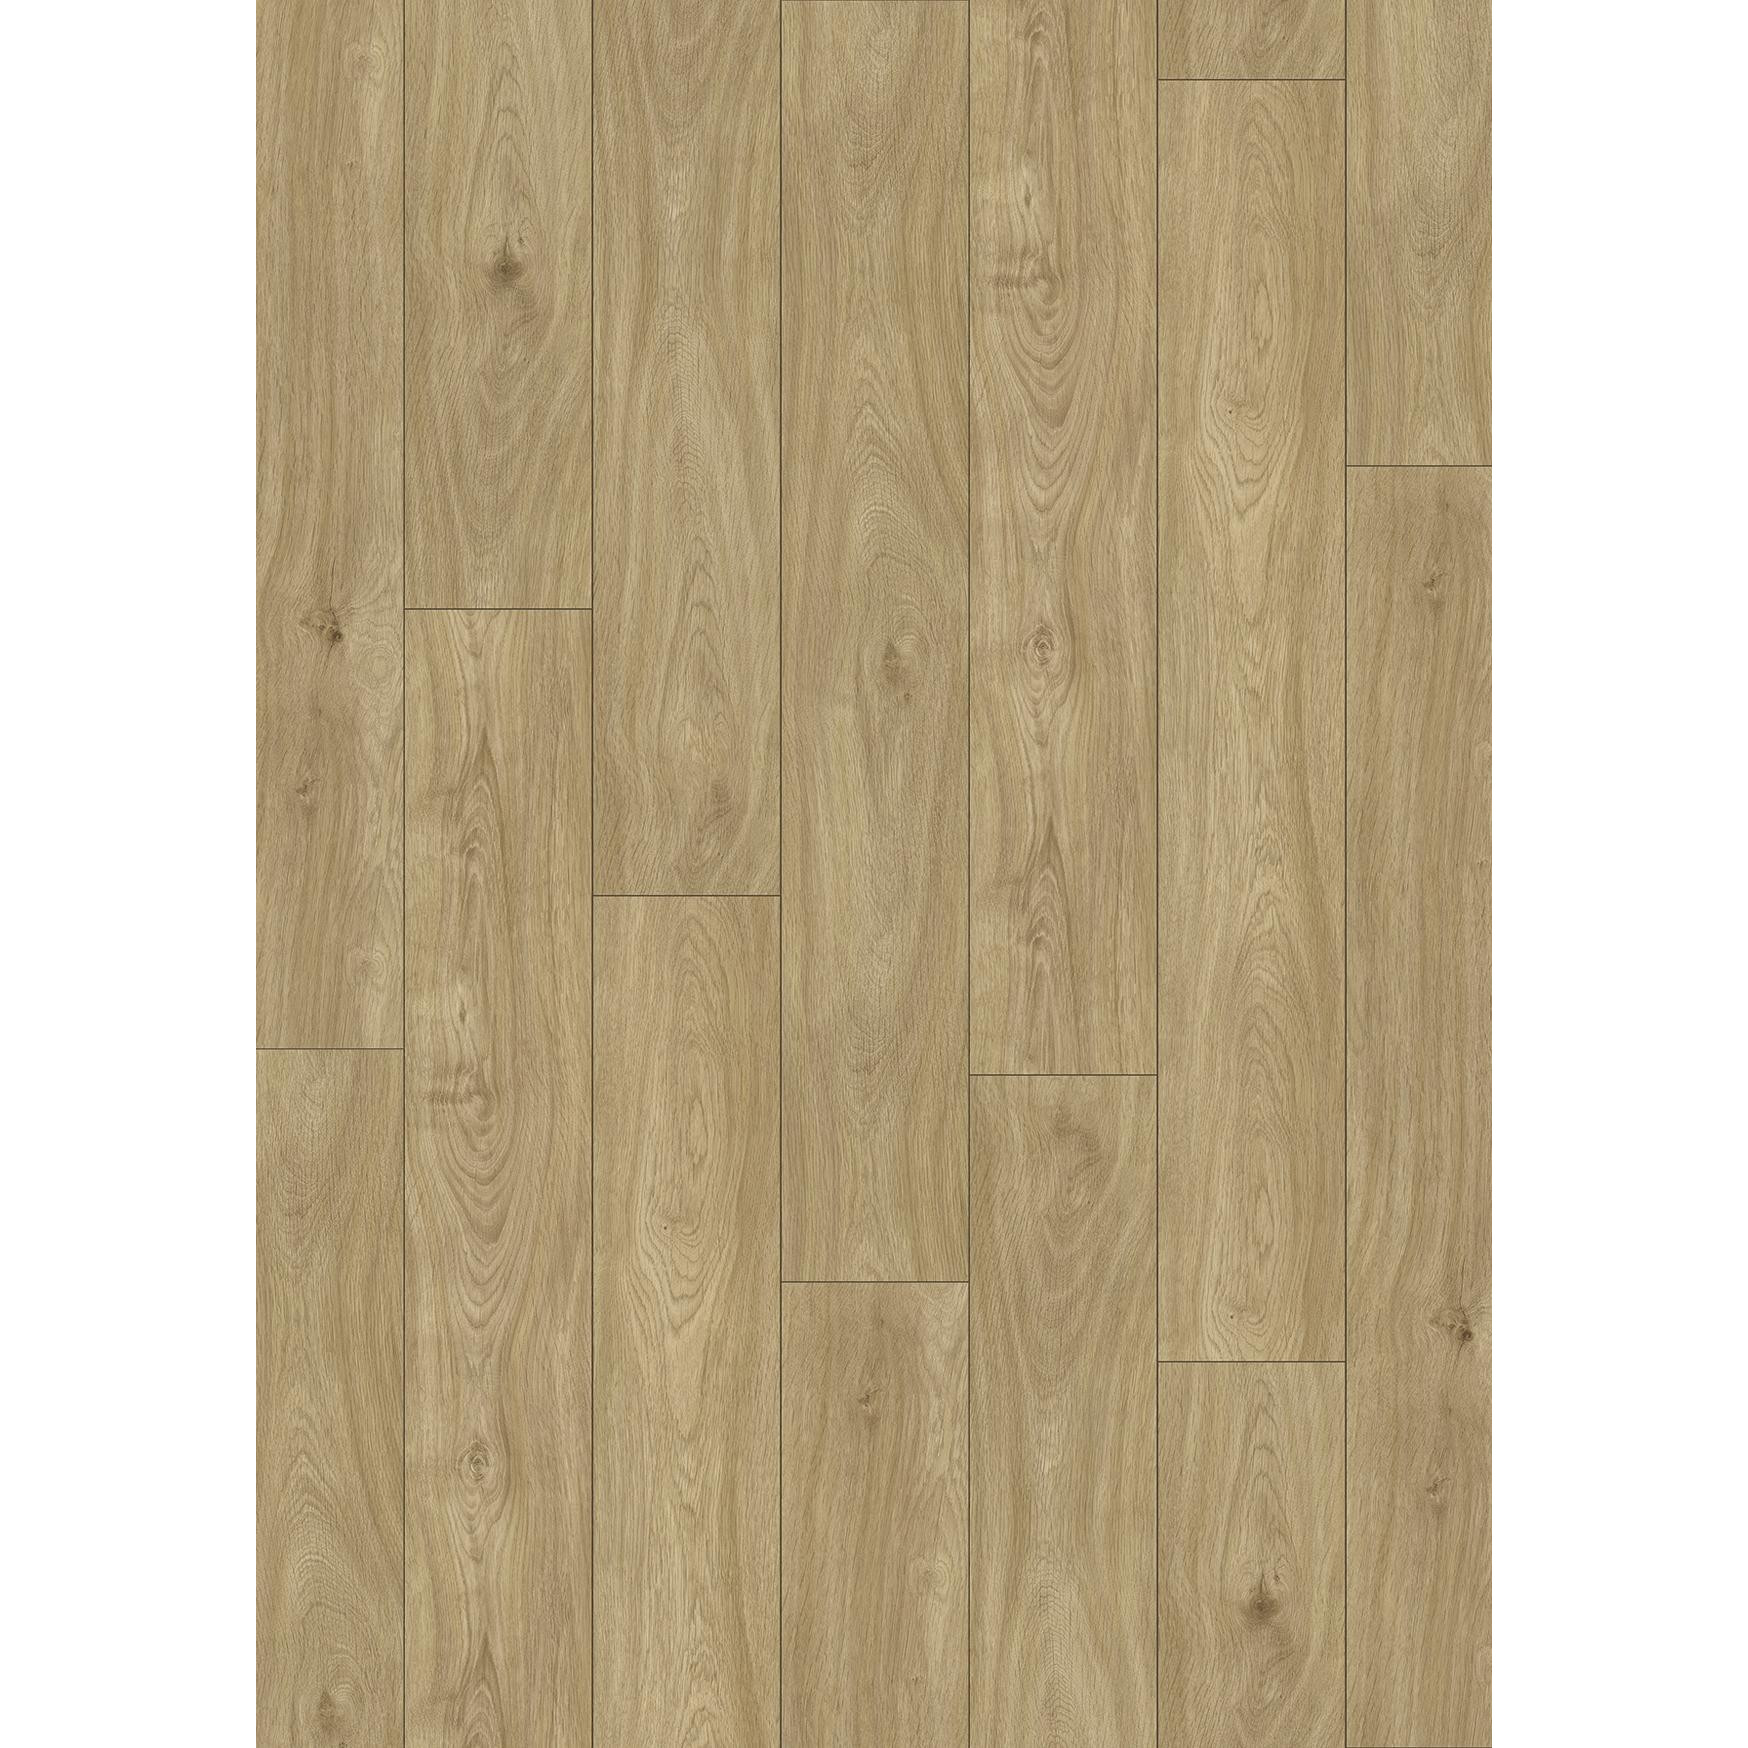 BinylPro Warm Wood Dartagnan Oak 1530 - зображення 1